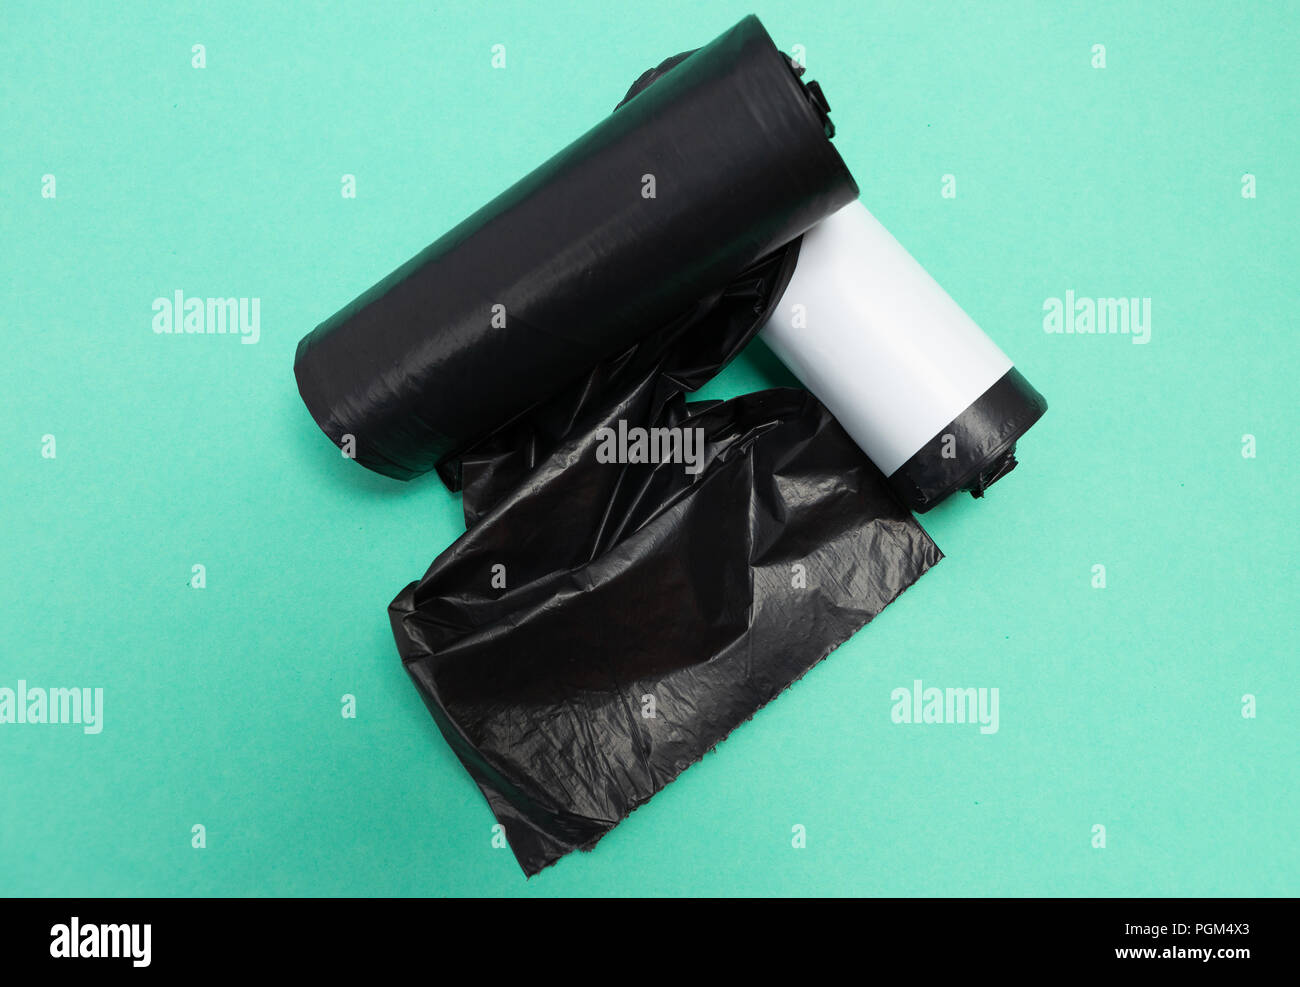 Déchets en plastique noir sac poubelle poubelle poubelle rouleaux inutilisés comme simple outil de recyclage des déchets de ménage pollution concept isolé sur fond vert Banque D'Images